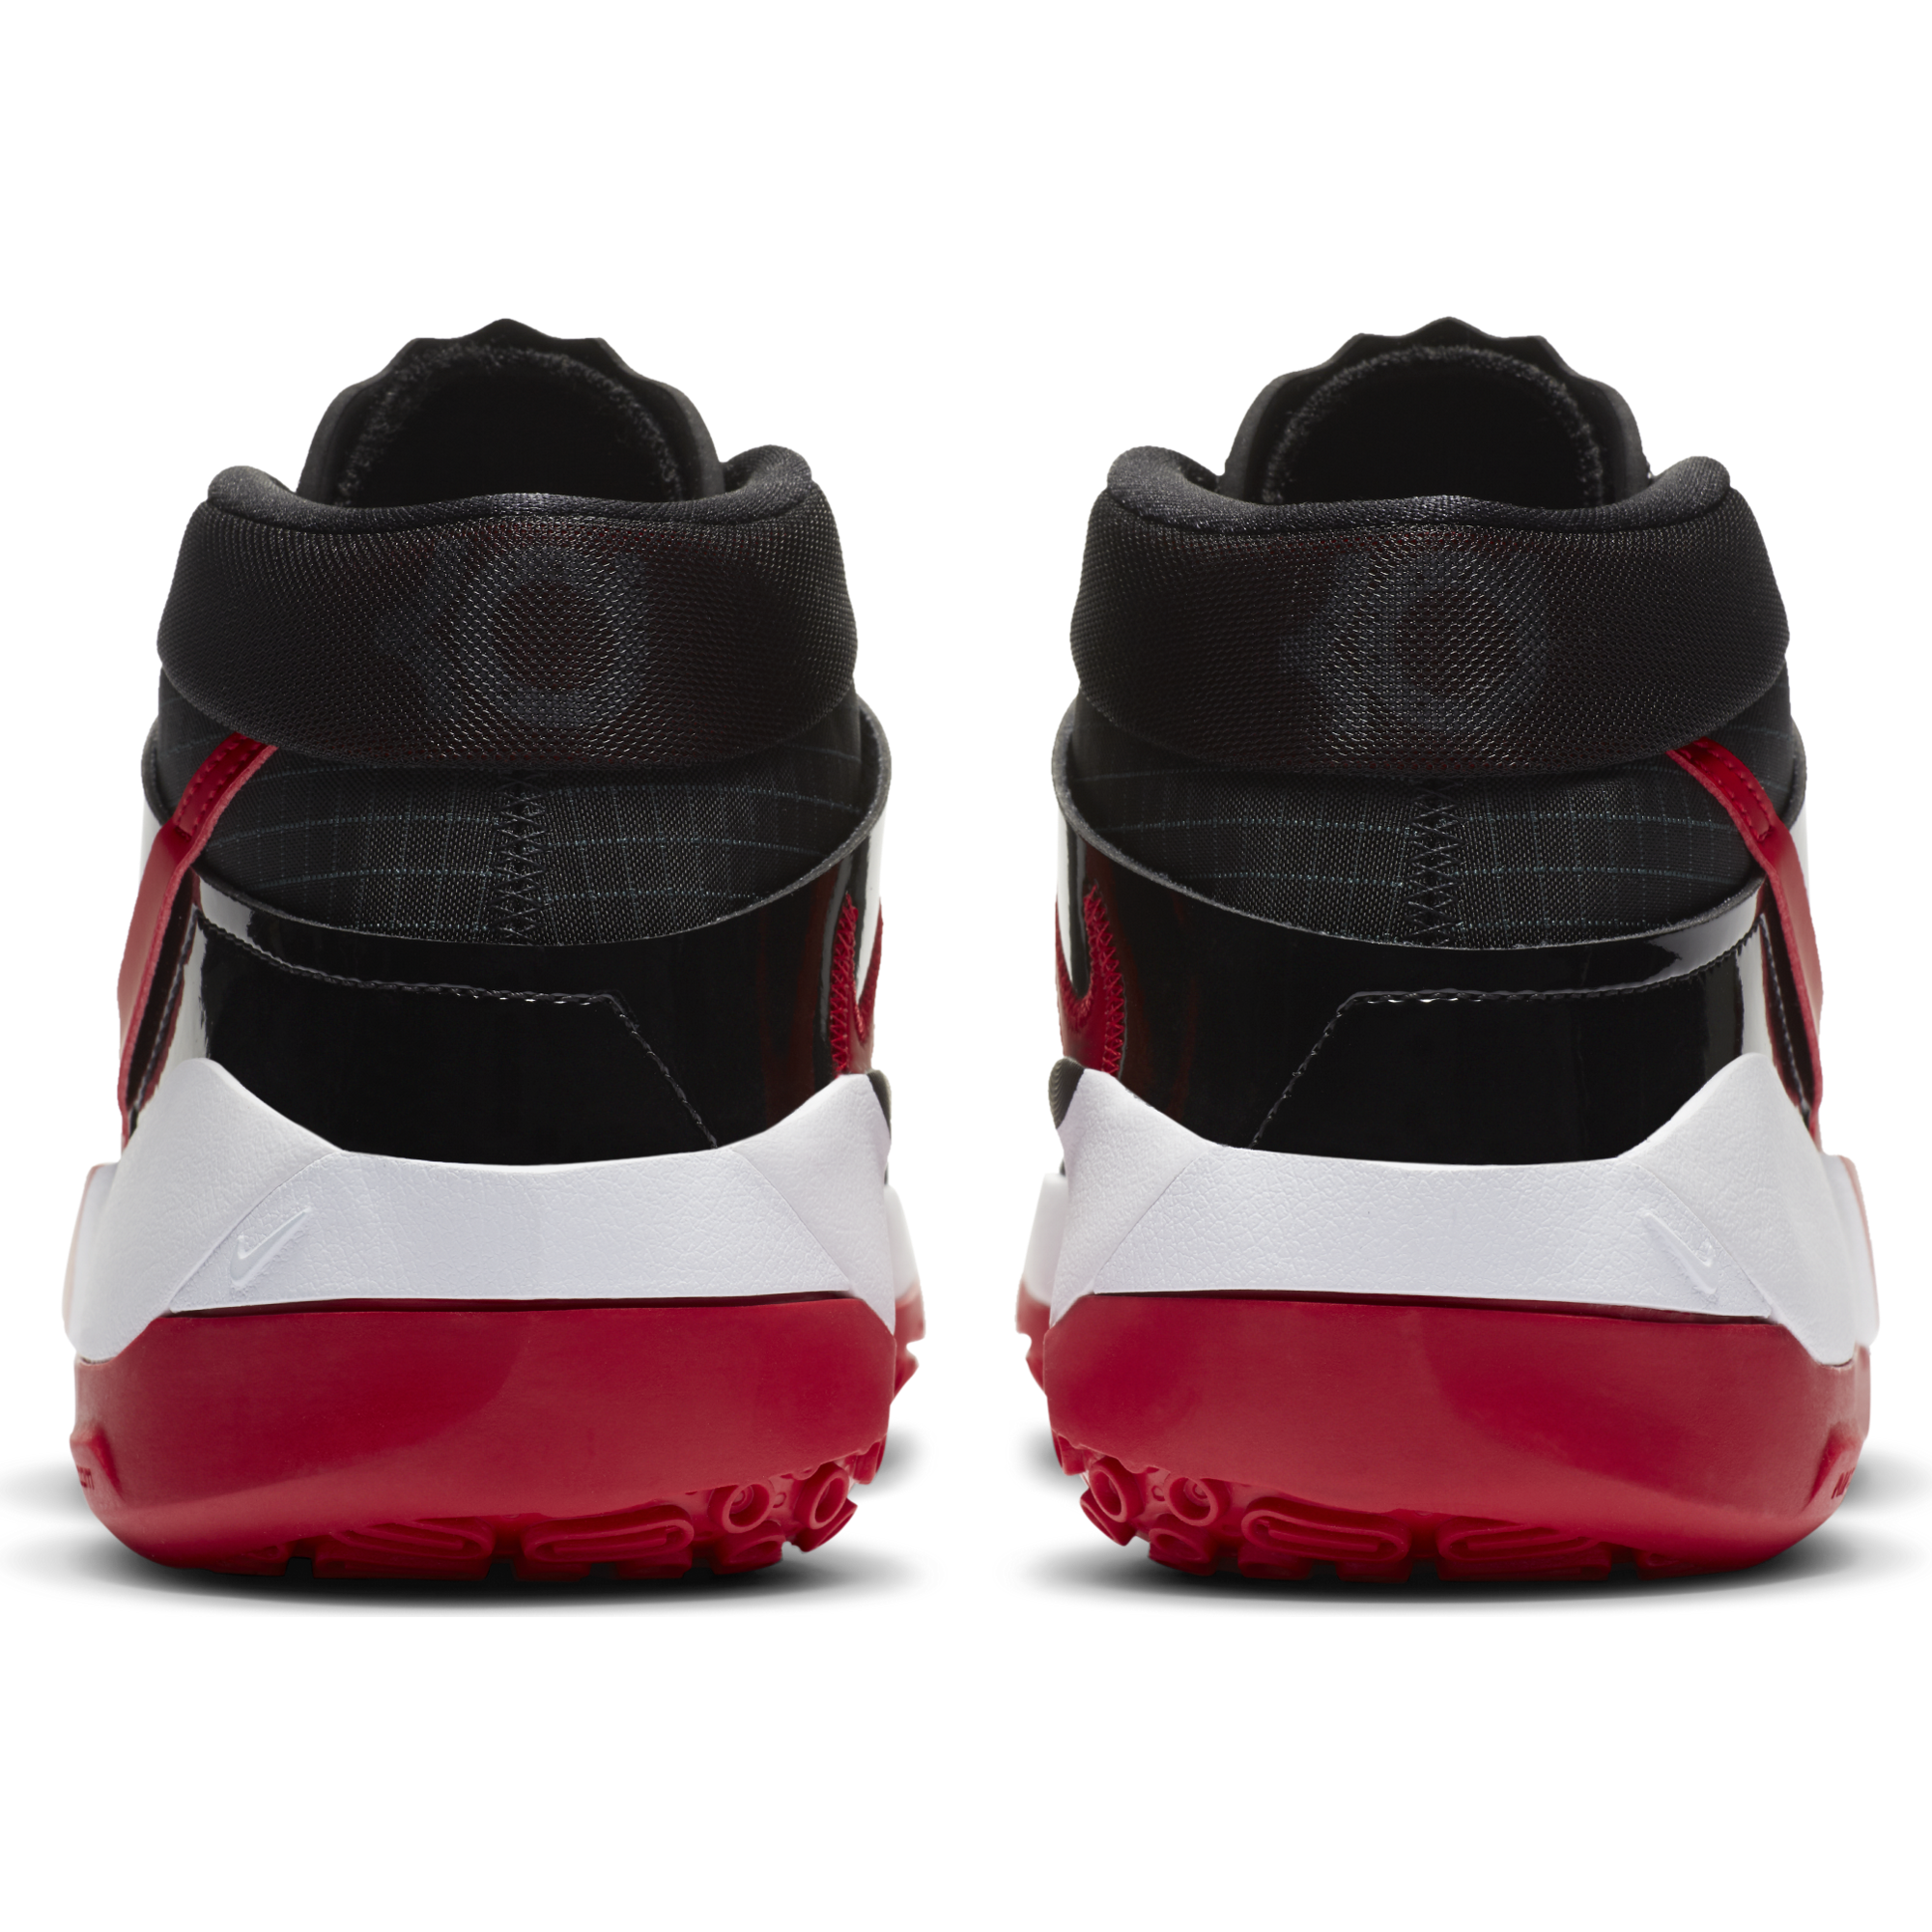 Nike Kd 13 @ Footlocker